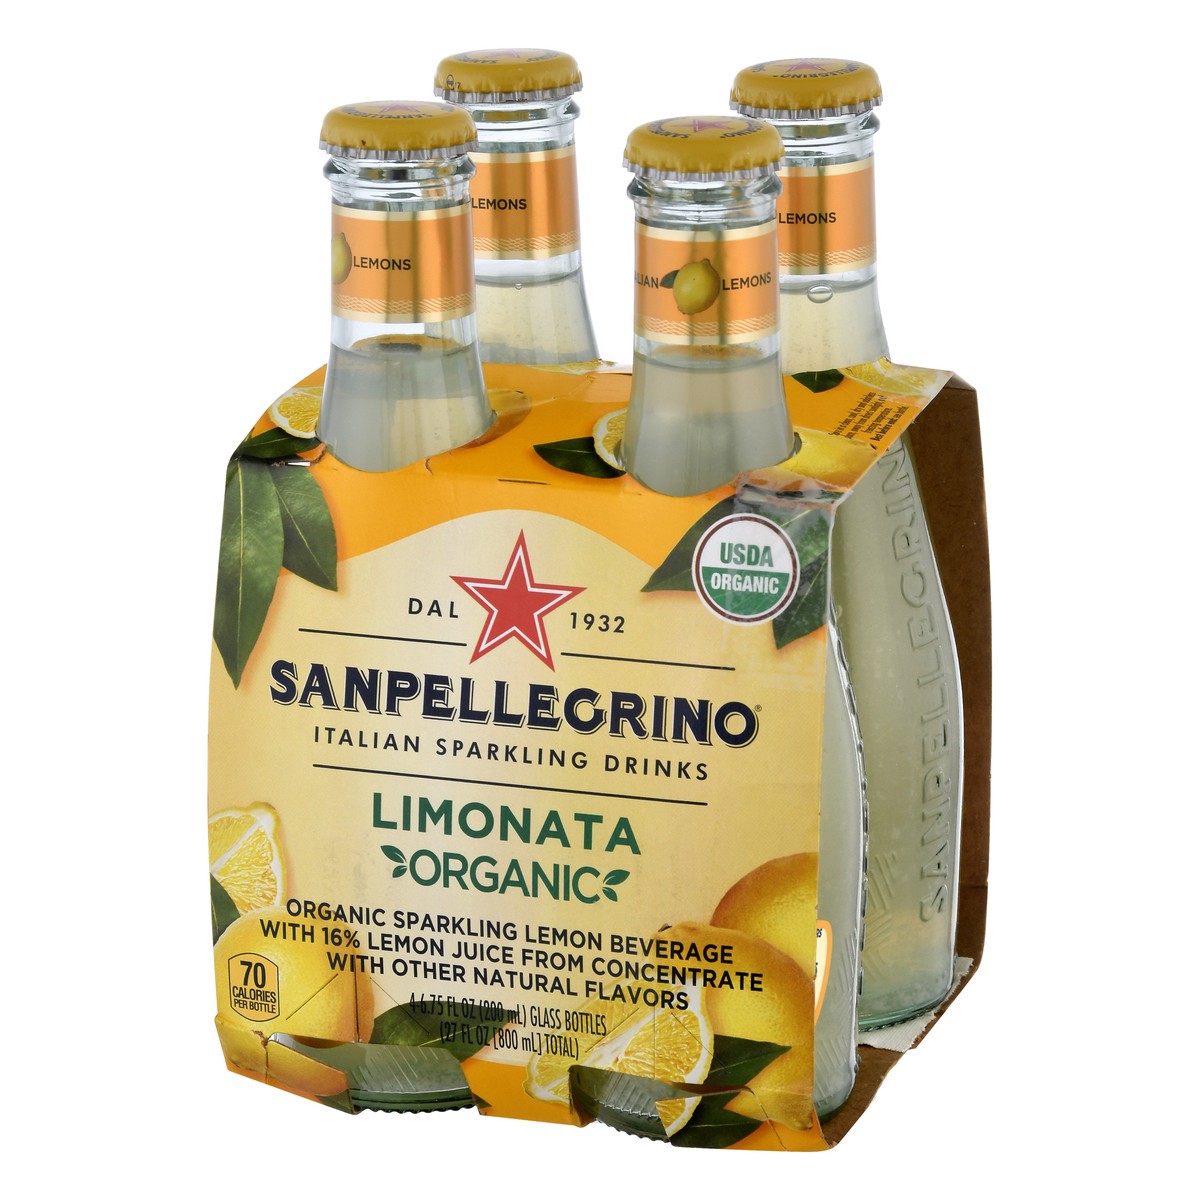 slide 2 of 9, SANPELLEGRINO Italian Sparkling Drinks Organic Limonata, 6.76 oz. glass bottle 4-pack, 27 oz